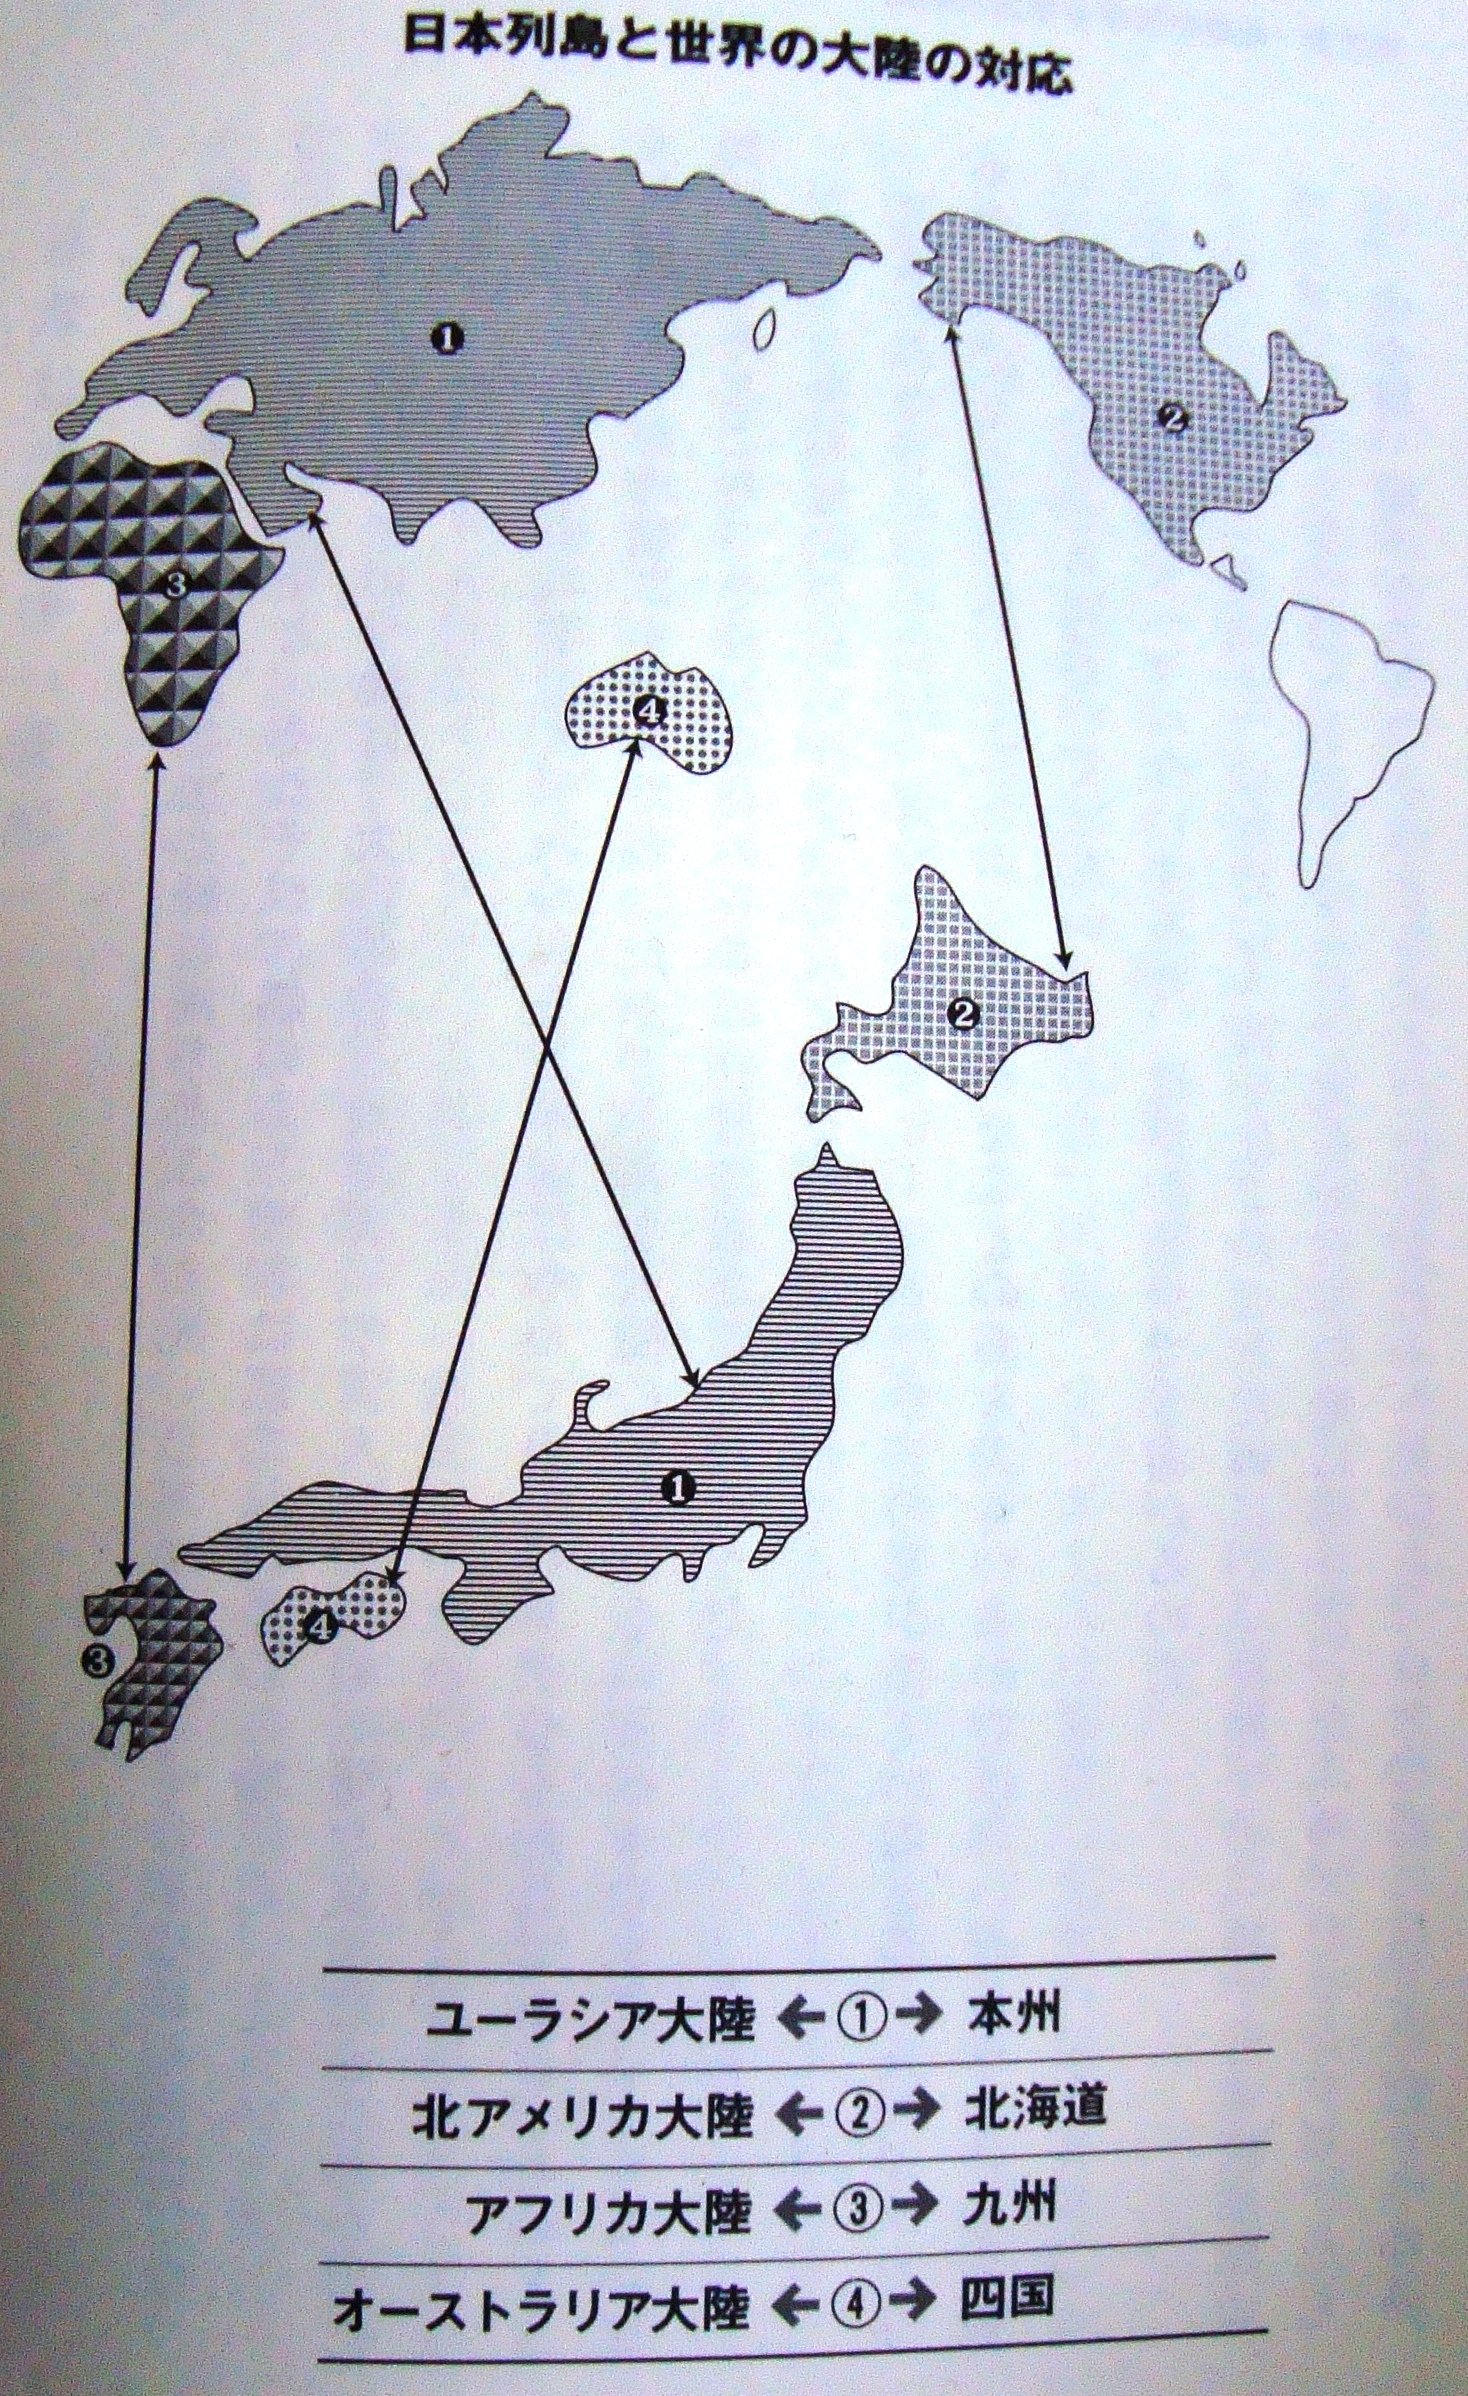 日本列島と世界の大陸の対応